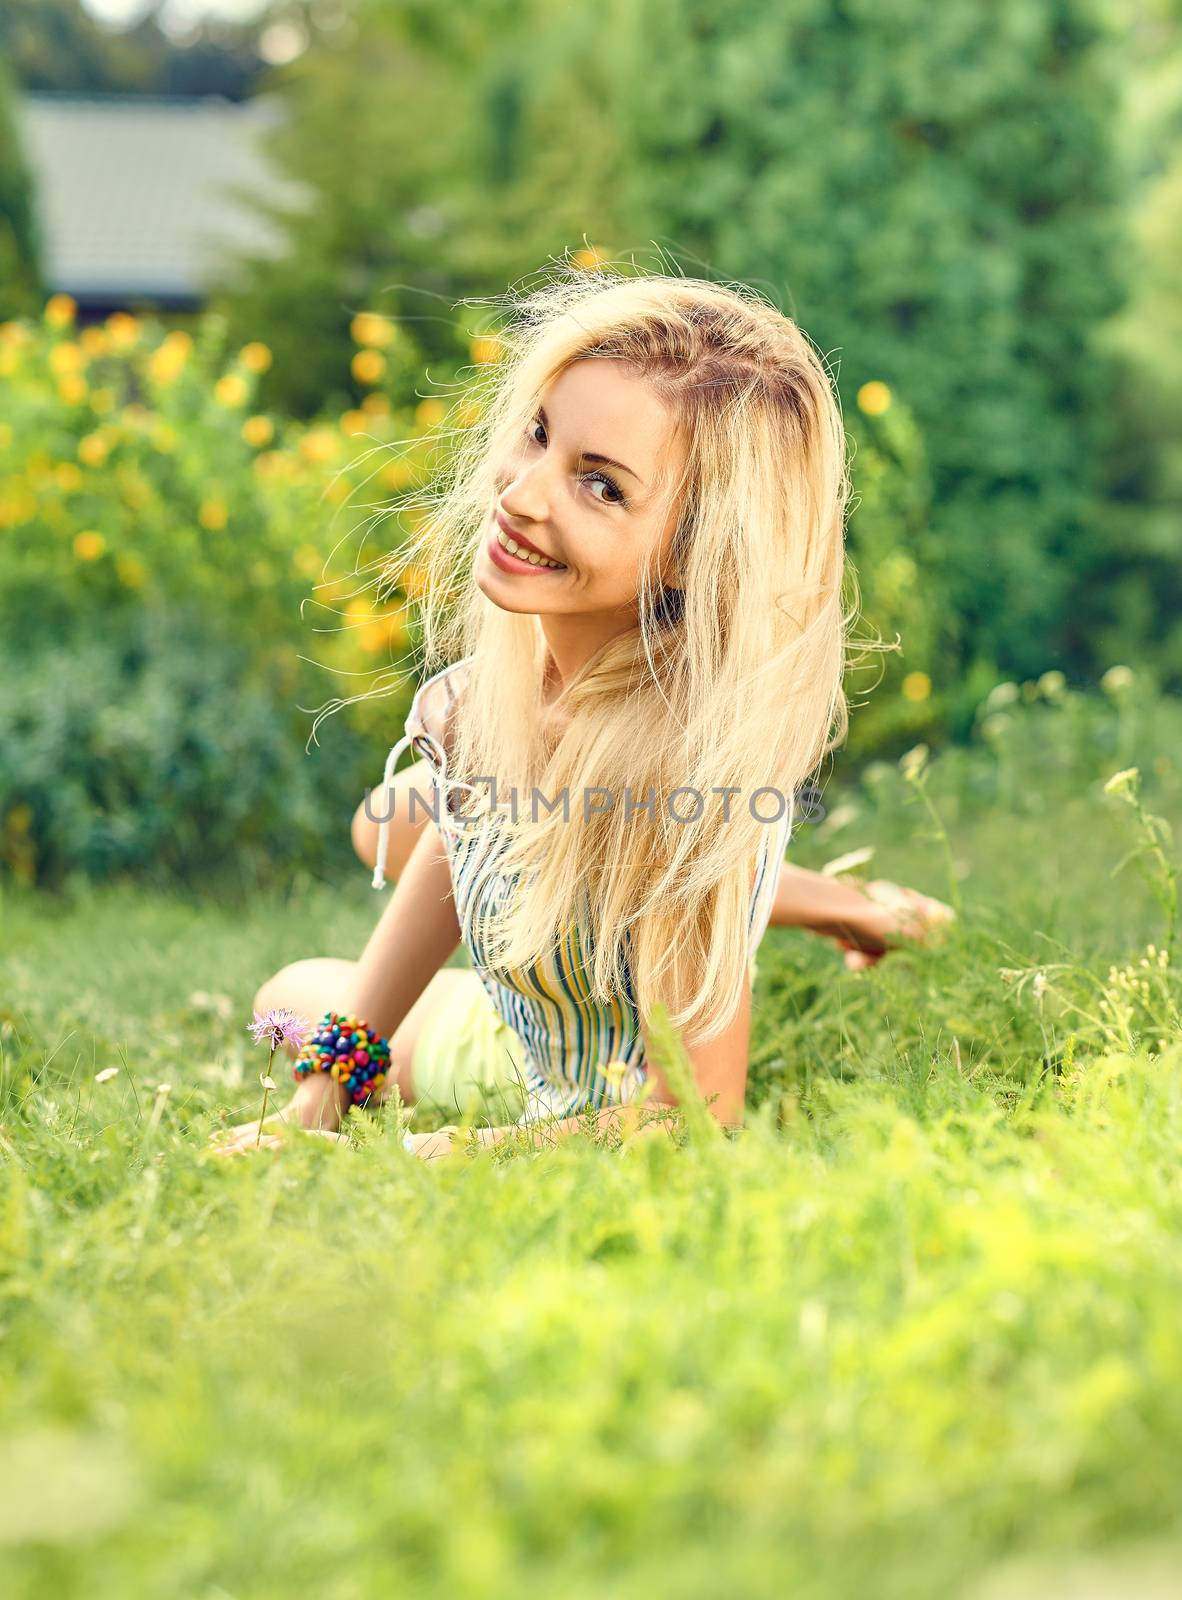 Beauty playful woman relax, garden grass, outdoors by 918